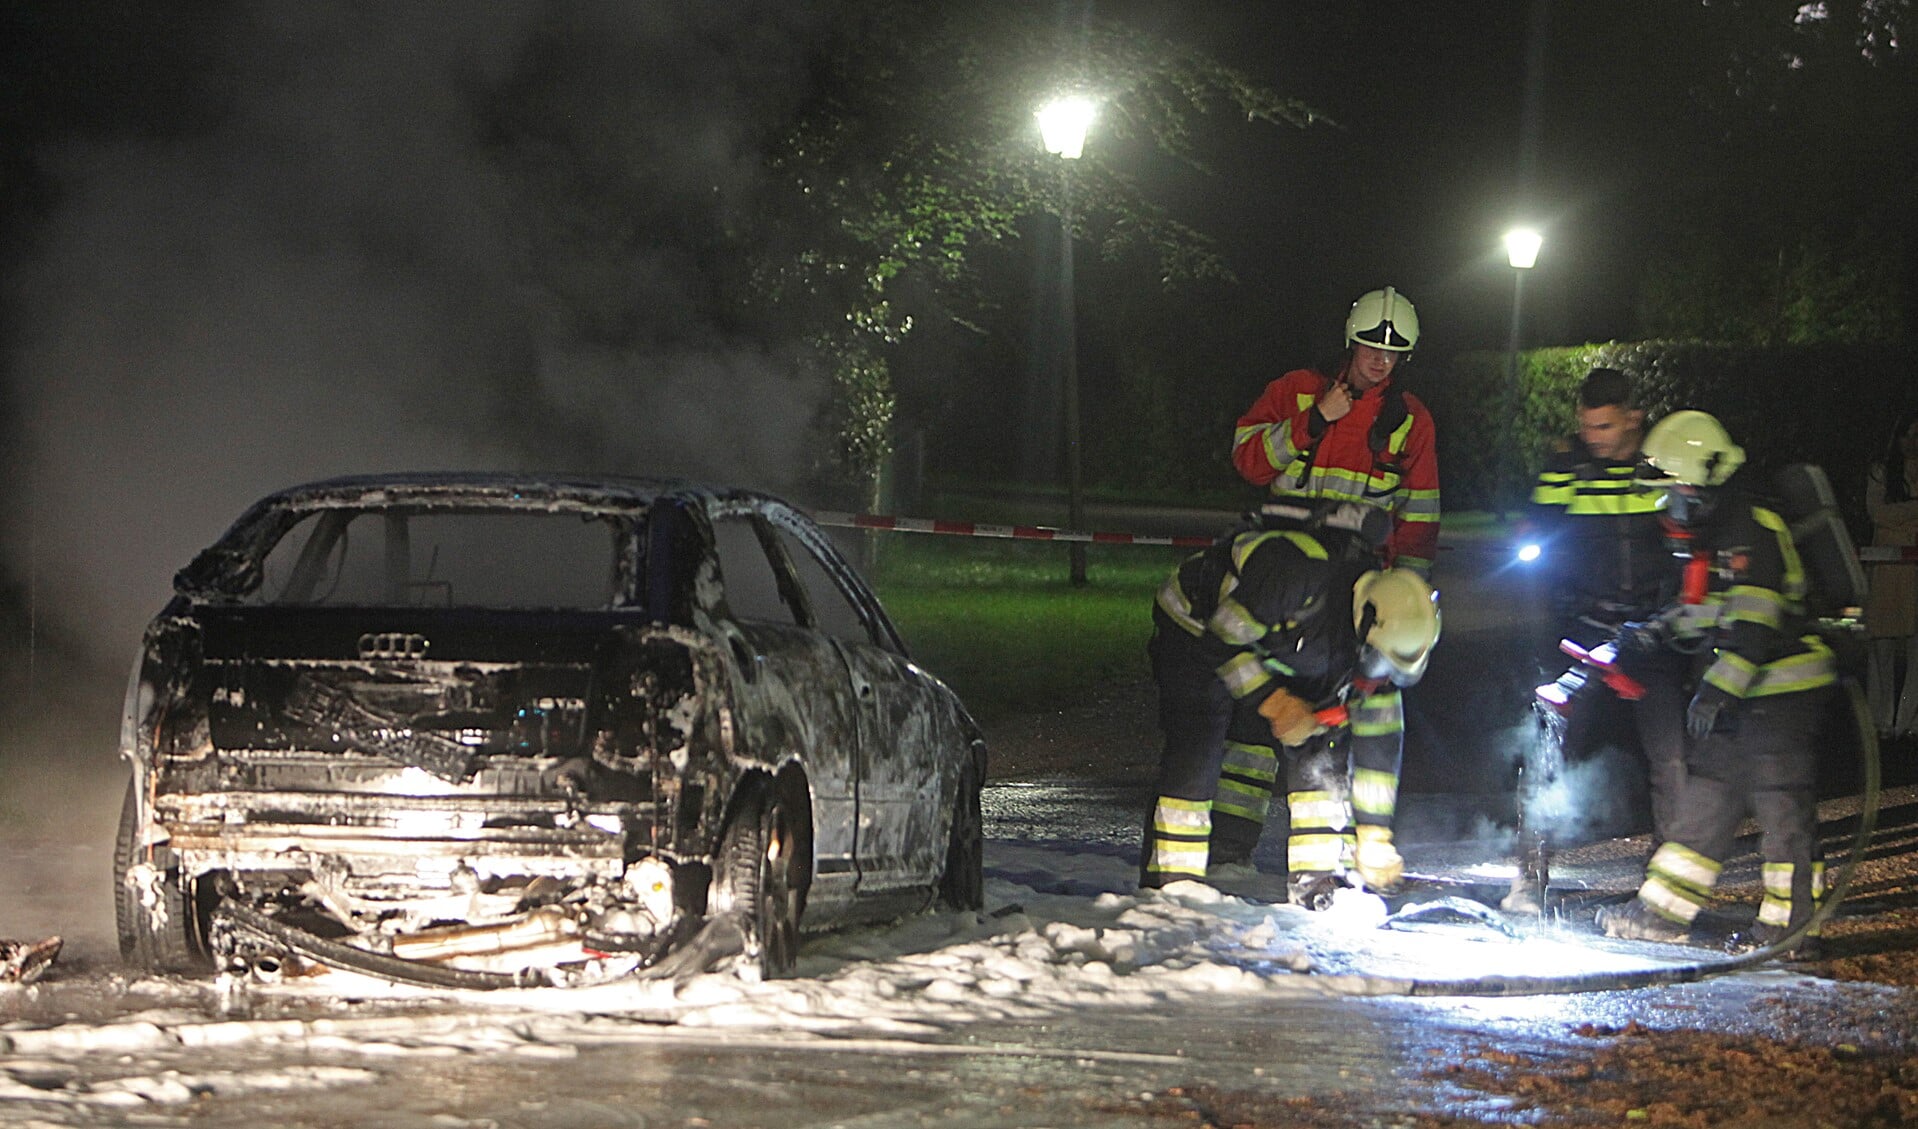 De uitgebrande auto kan verband houden met een overval op een woonboerderij in Eemnes